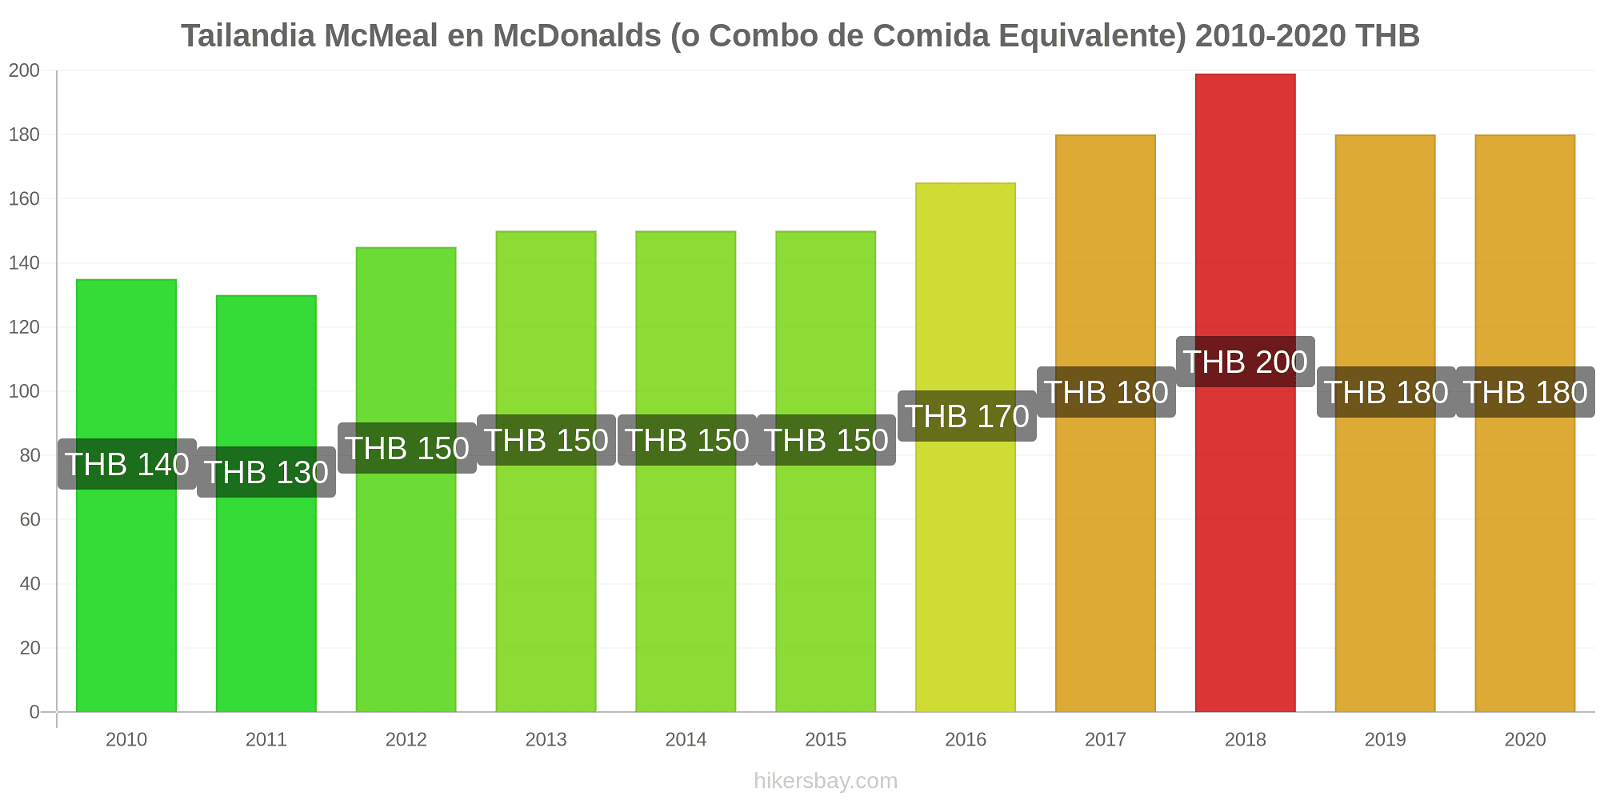 Tailandia cambios de precios McMeal en McDonalds (o menú equivalente) hikersbay.com